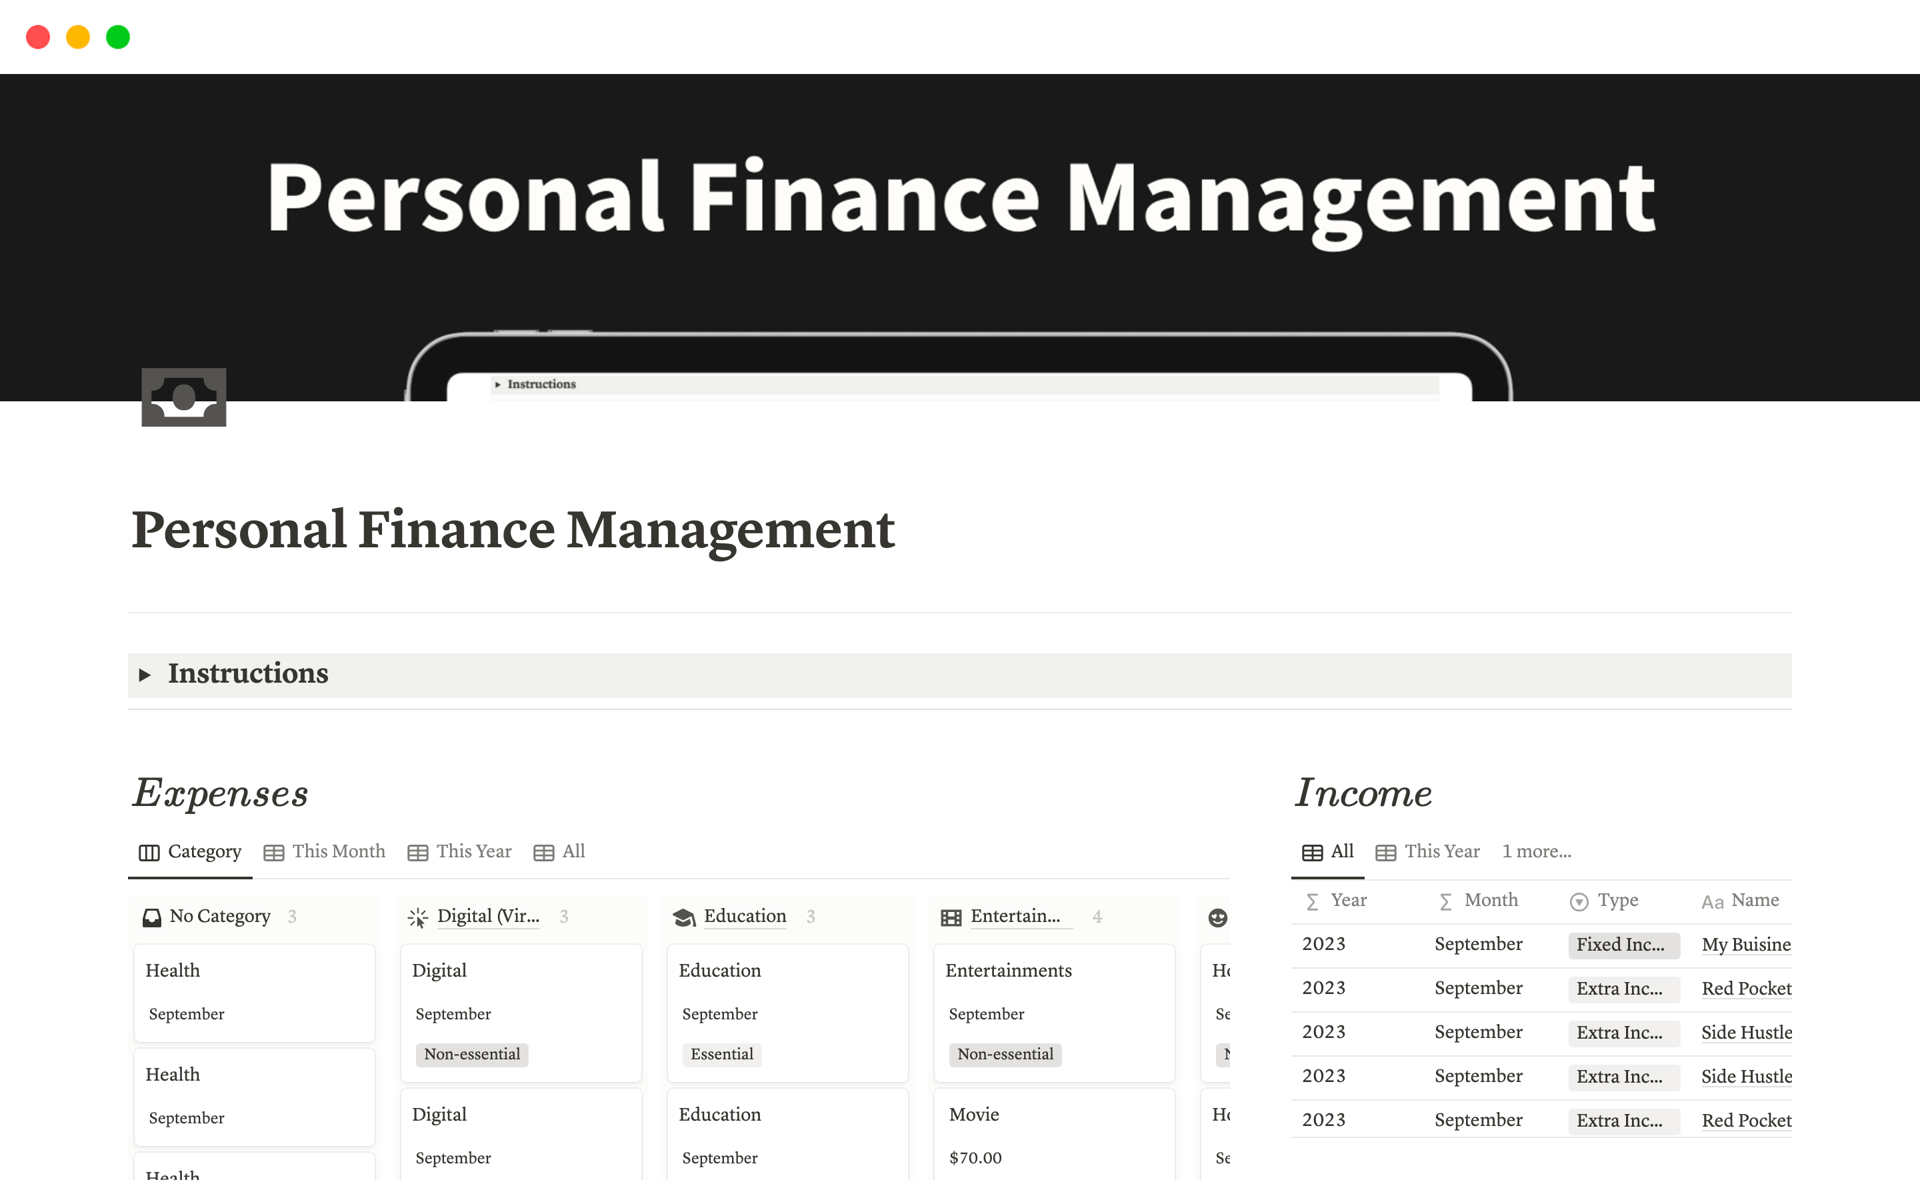 Aperçu du modèle de Personal Finance Management